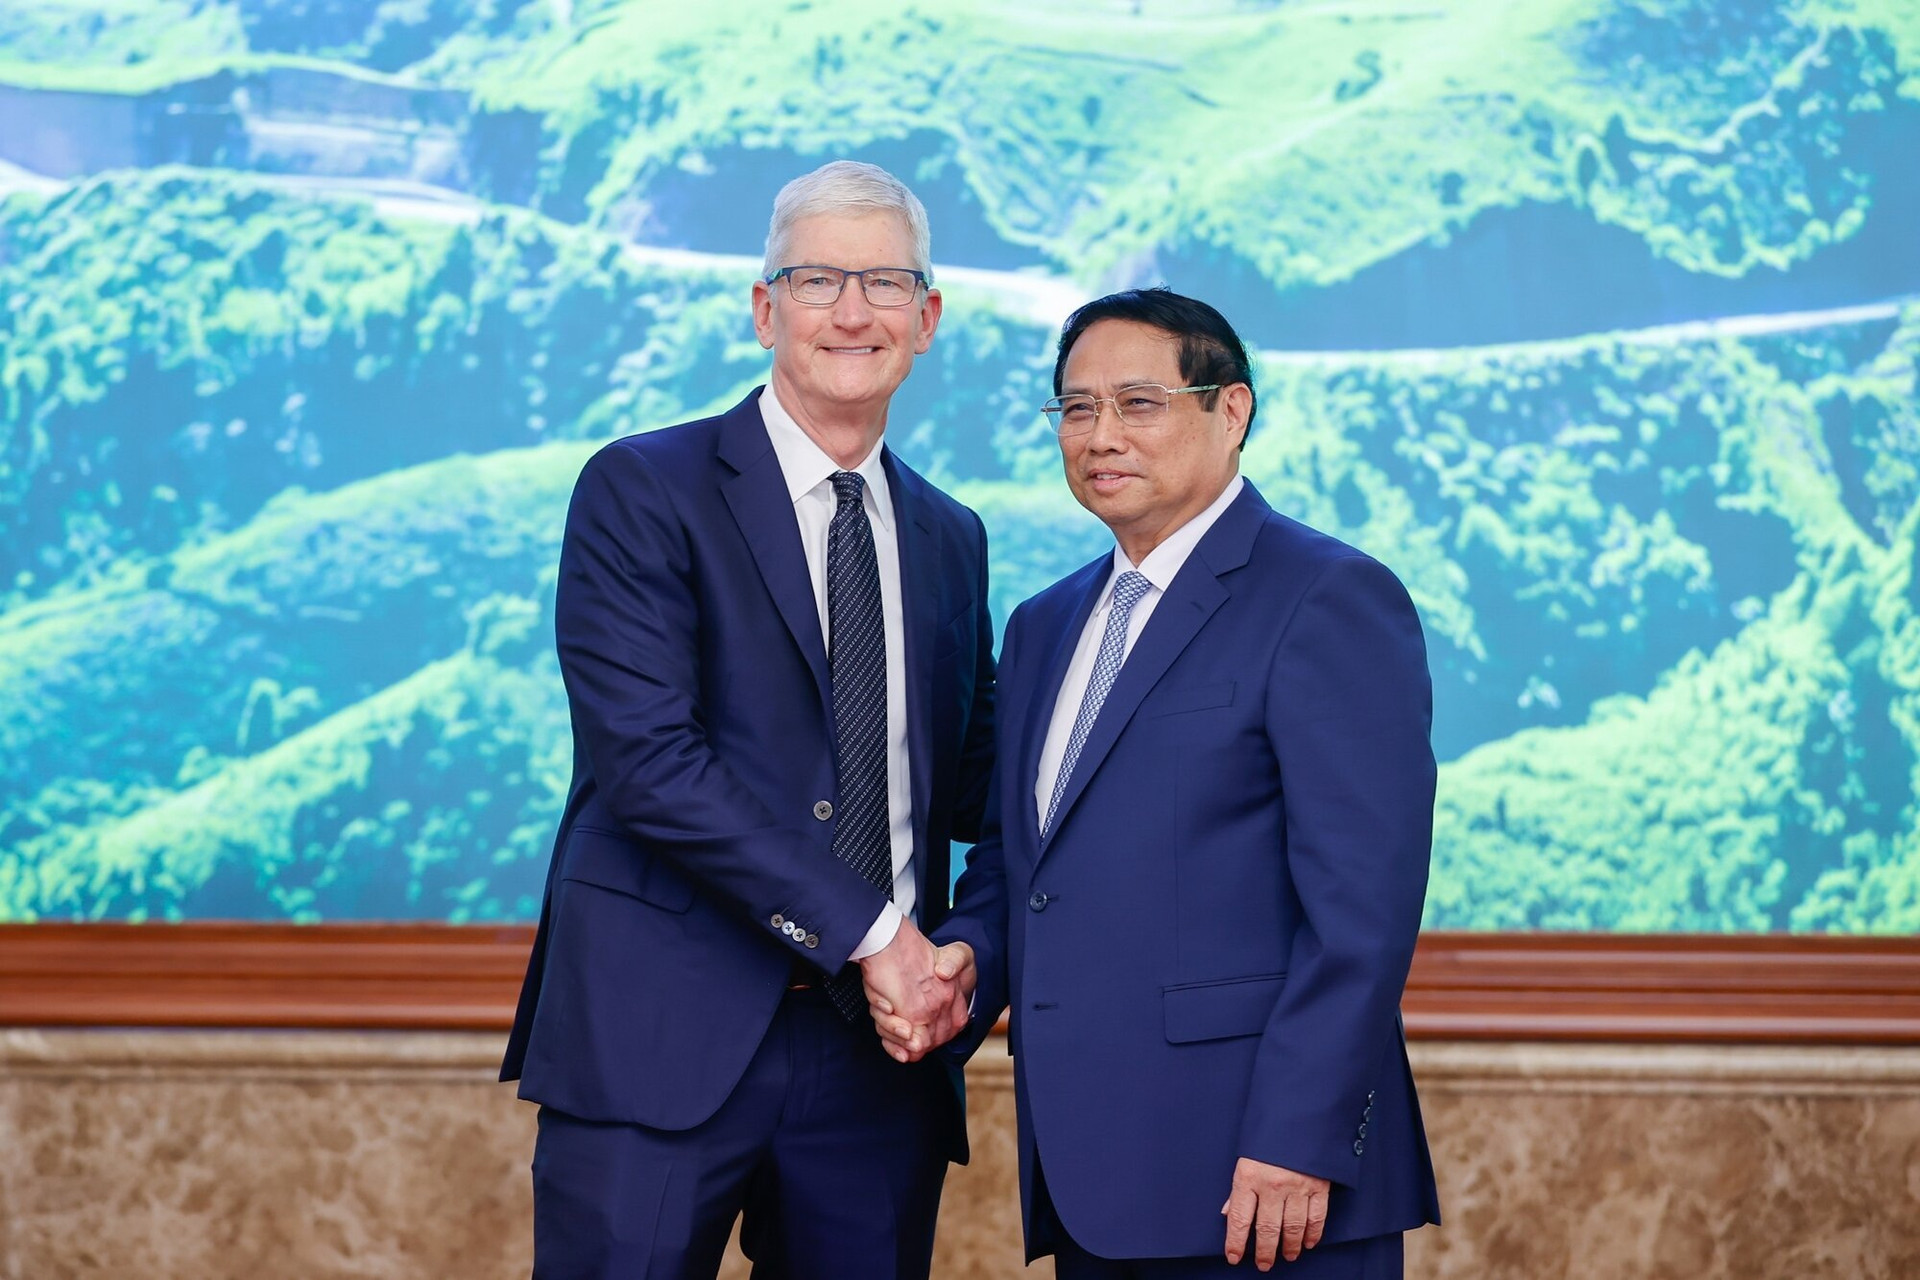 Trong ngày thứ hai của chuyến công tác cũng là ngày cuối cùng tại Việt Nam, Giám đốc điều hành Apple đã có buổi gặp mặt với Thủ tướng Phạm Minh Chính tại Trụ sở Chính phủ. Thủ tướng nhấn mạnh Chính phủ sẽ thành lập tổ công tác để hỗ trợ Apple ngày càng phát triển hiệu quả tại Việt Nam. (Ảnh: Đoàn Bắc/VGP)